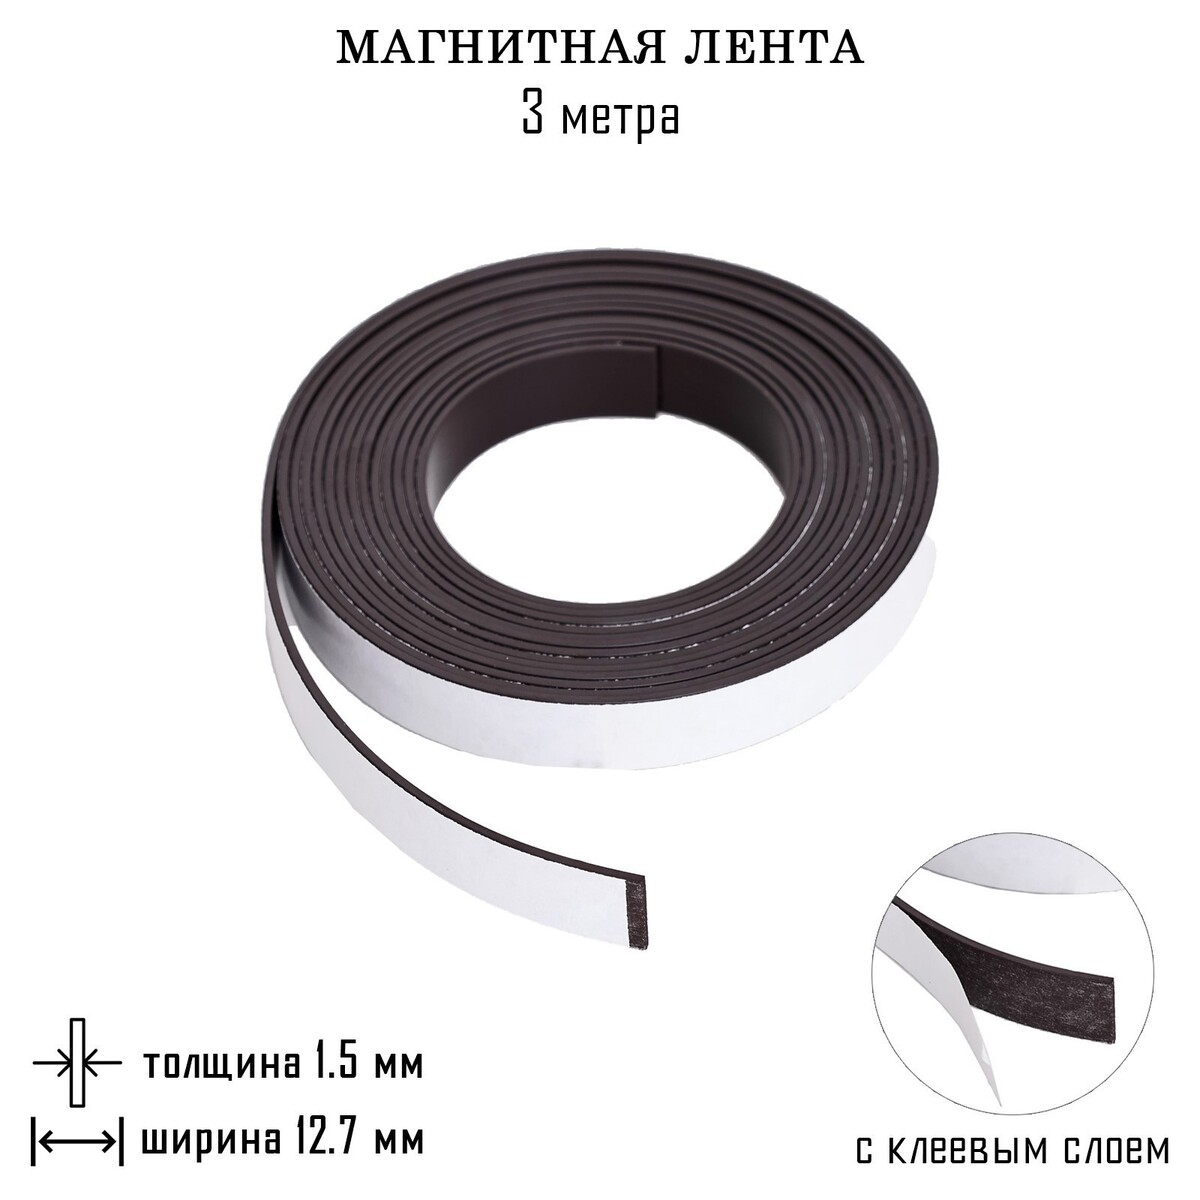 Магнитная лента, с клеевым слоем, 3 метра, толщина 1.5 мм, ширина 12.7 мм лента клейкая в диспенсере goodmark 19 мм 33 метра